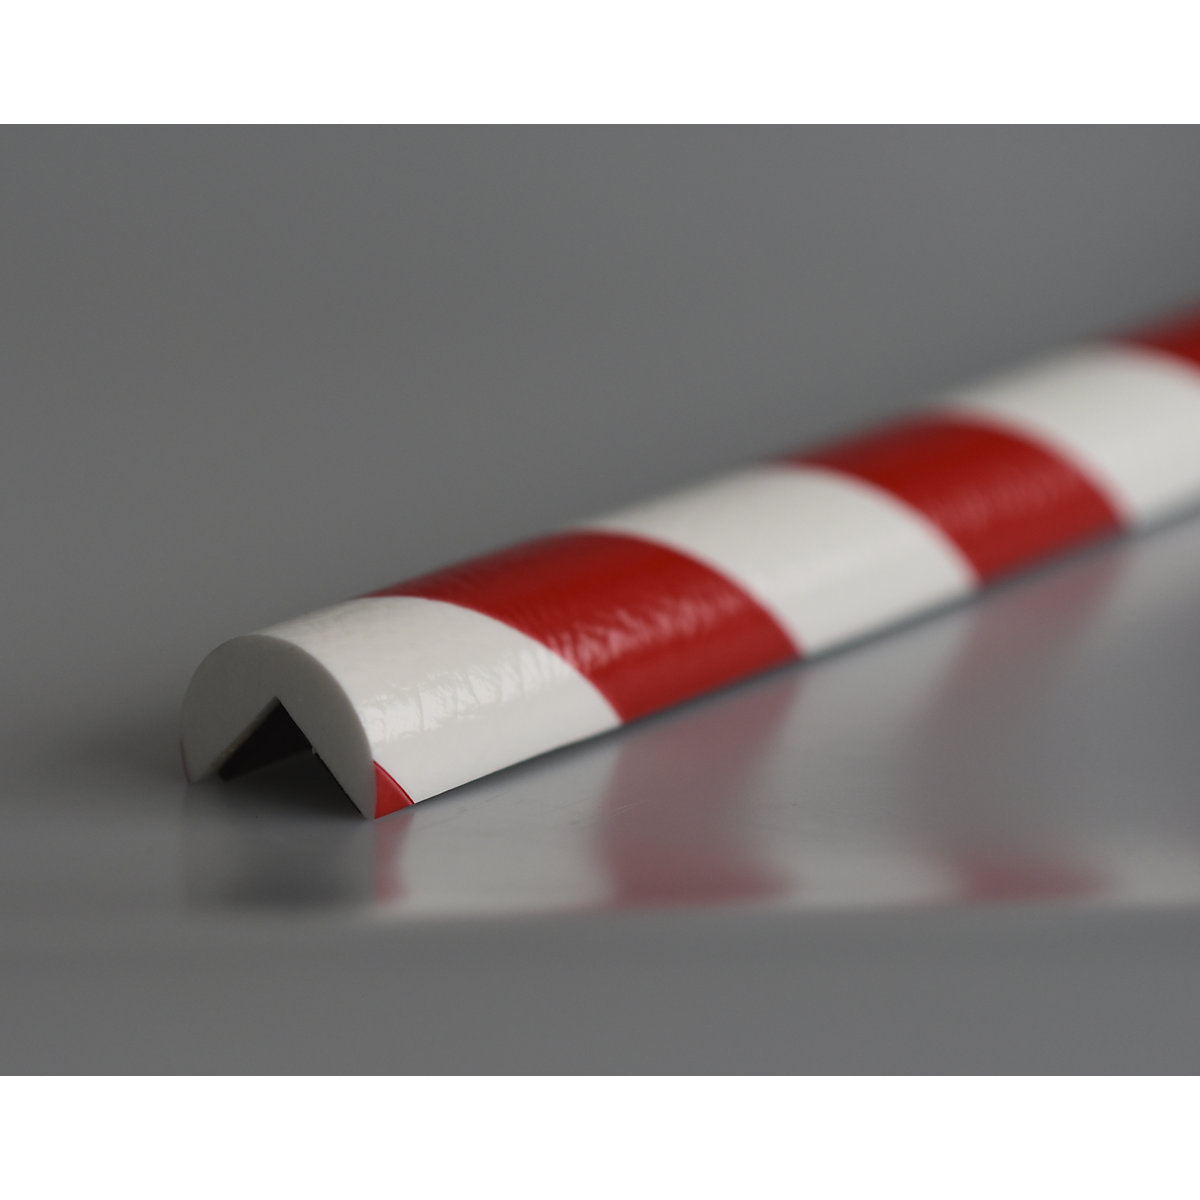 Zaščita vogalov Knuffi® – SHG, tip A, kos 1 m, rdeče / bele barve, magnetna izvedba-16